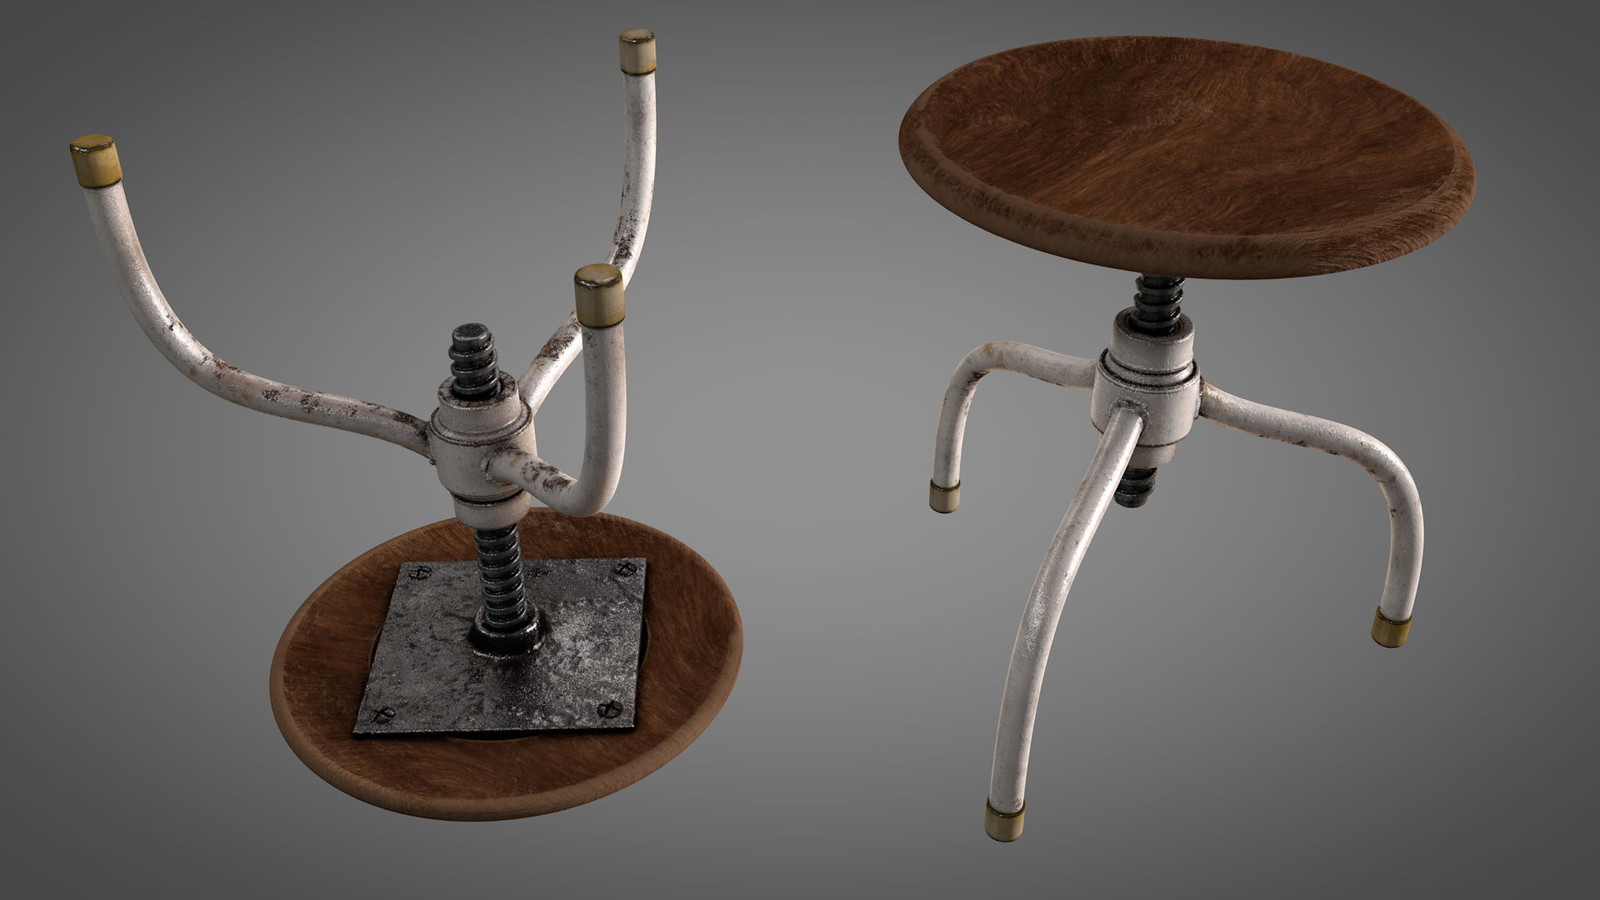 Small worn vintage stool